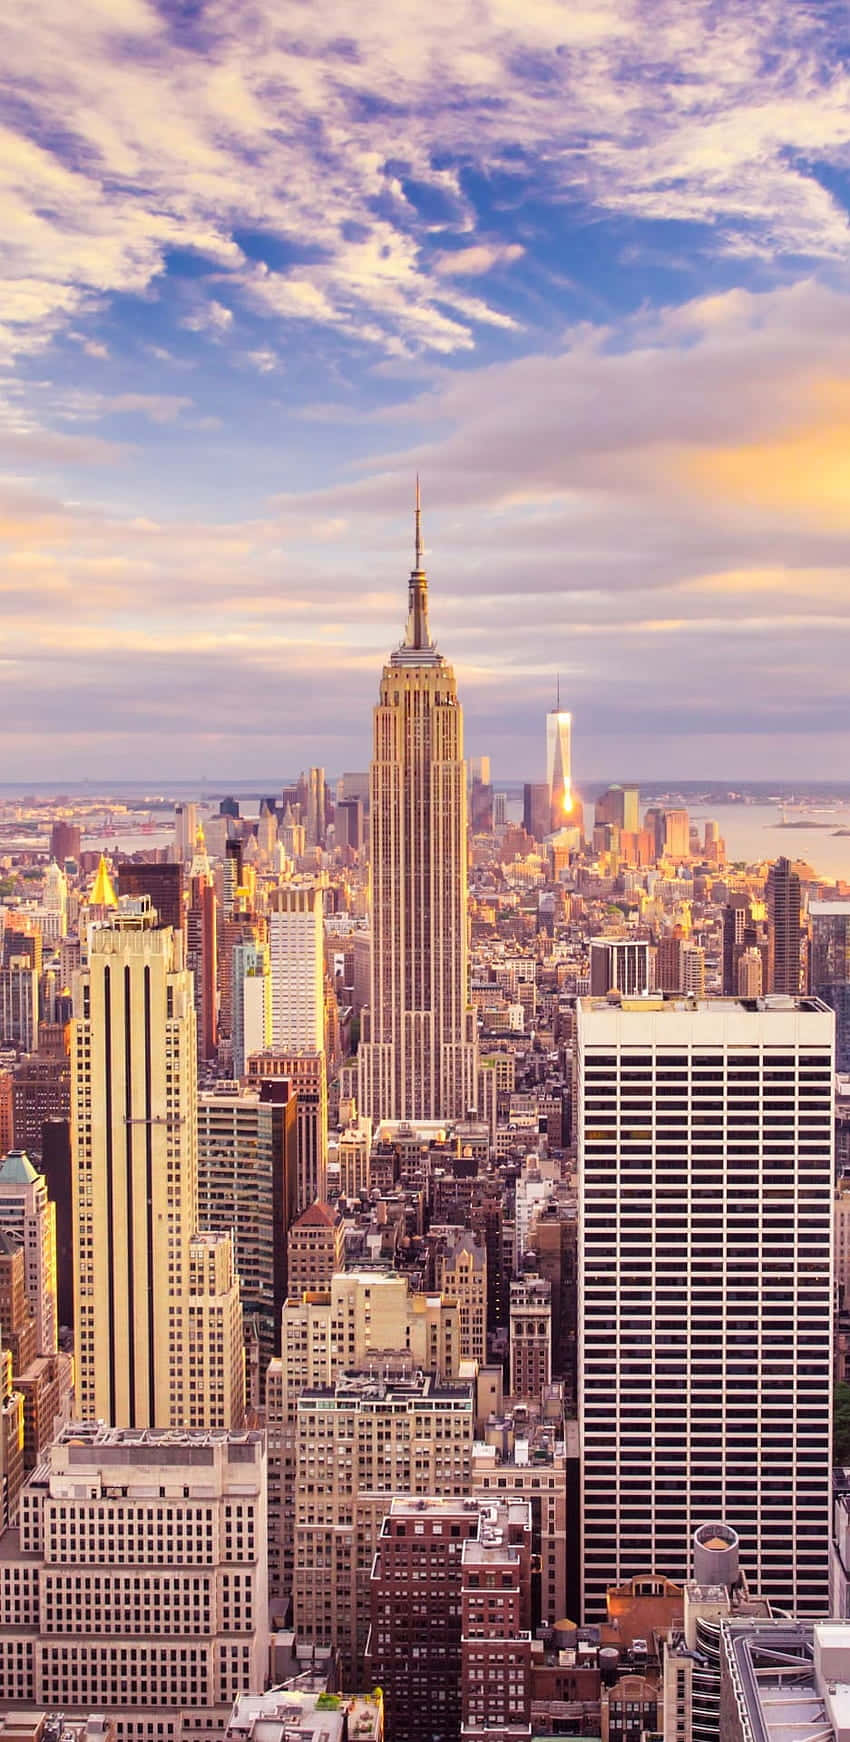 Eledificio Empire State Y Los Rascacielos Son El Mejor Fondo De Nueva York.